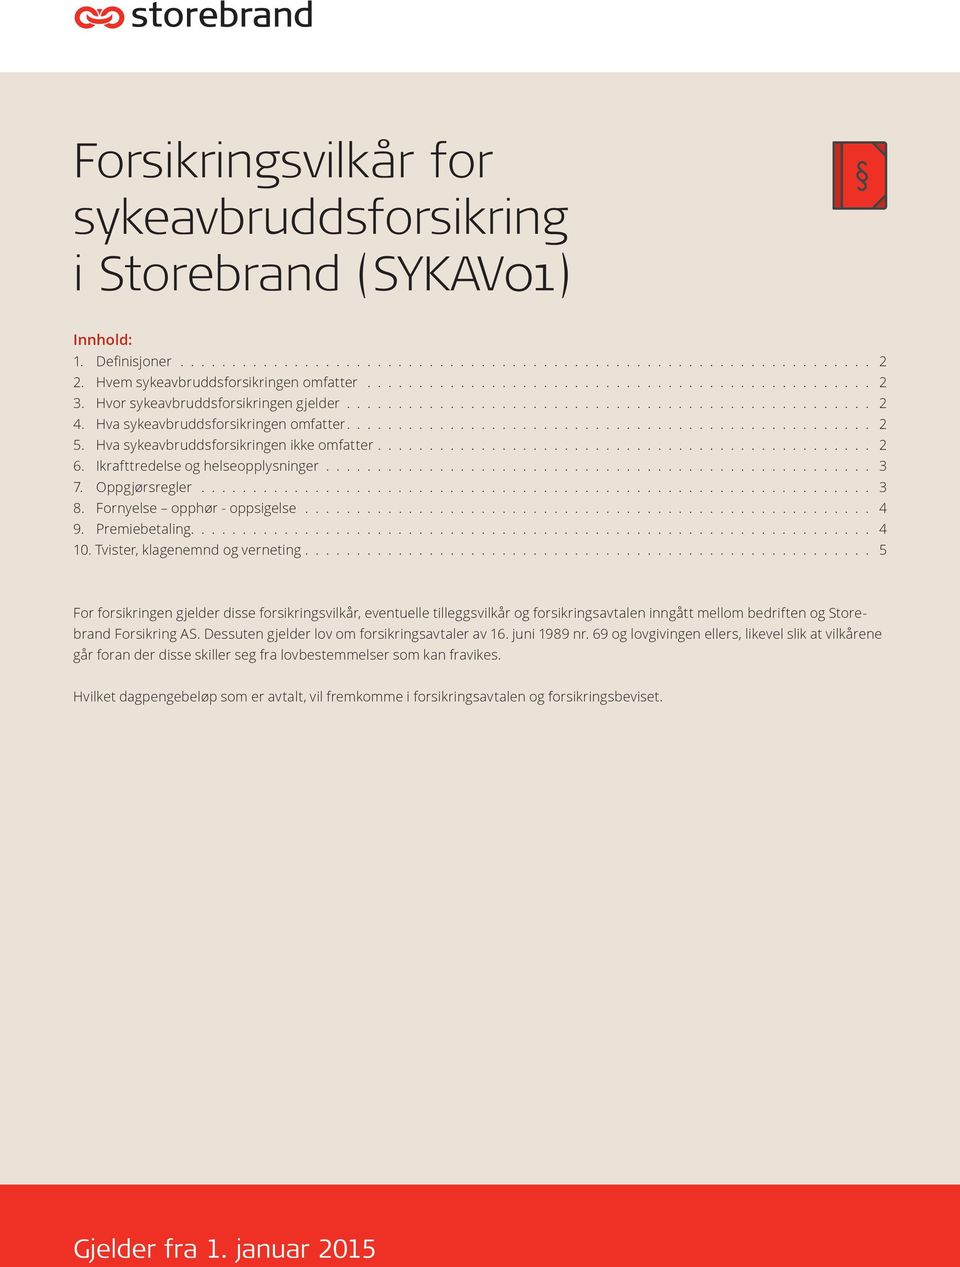 Forsikringsvilkår for sykeavbruddsforsikring i Storebrand (SYKAV01) - PDF  Gratis nedlasting